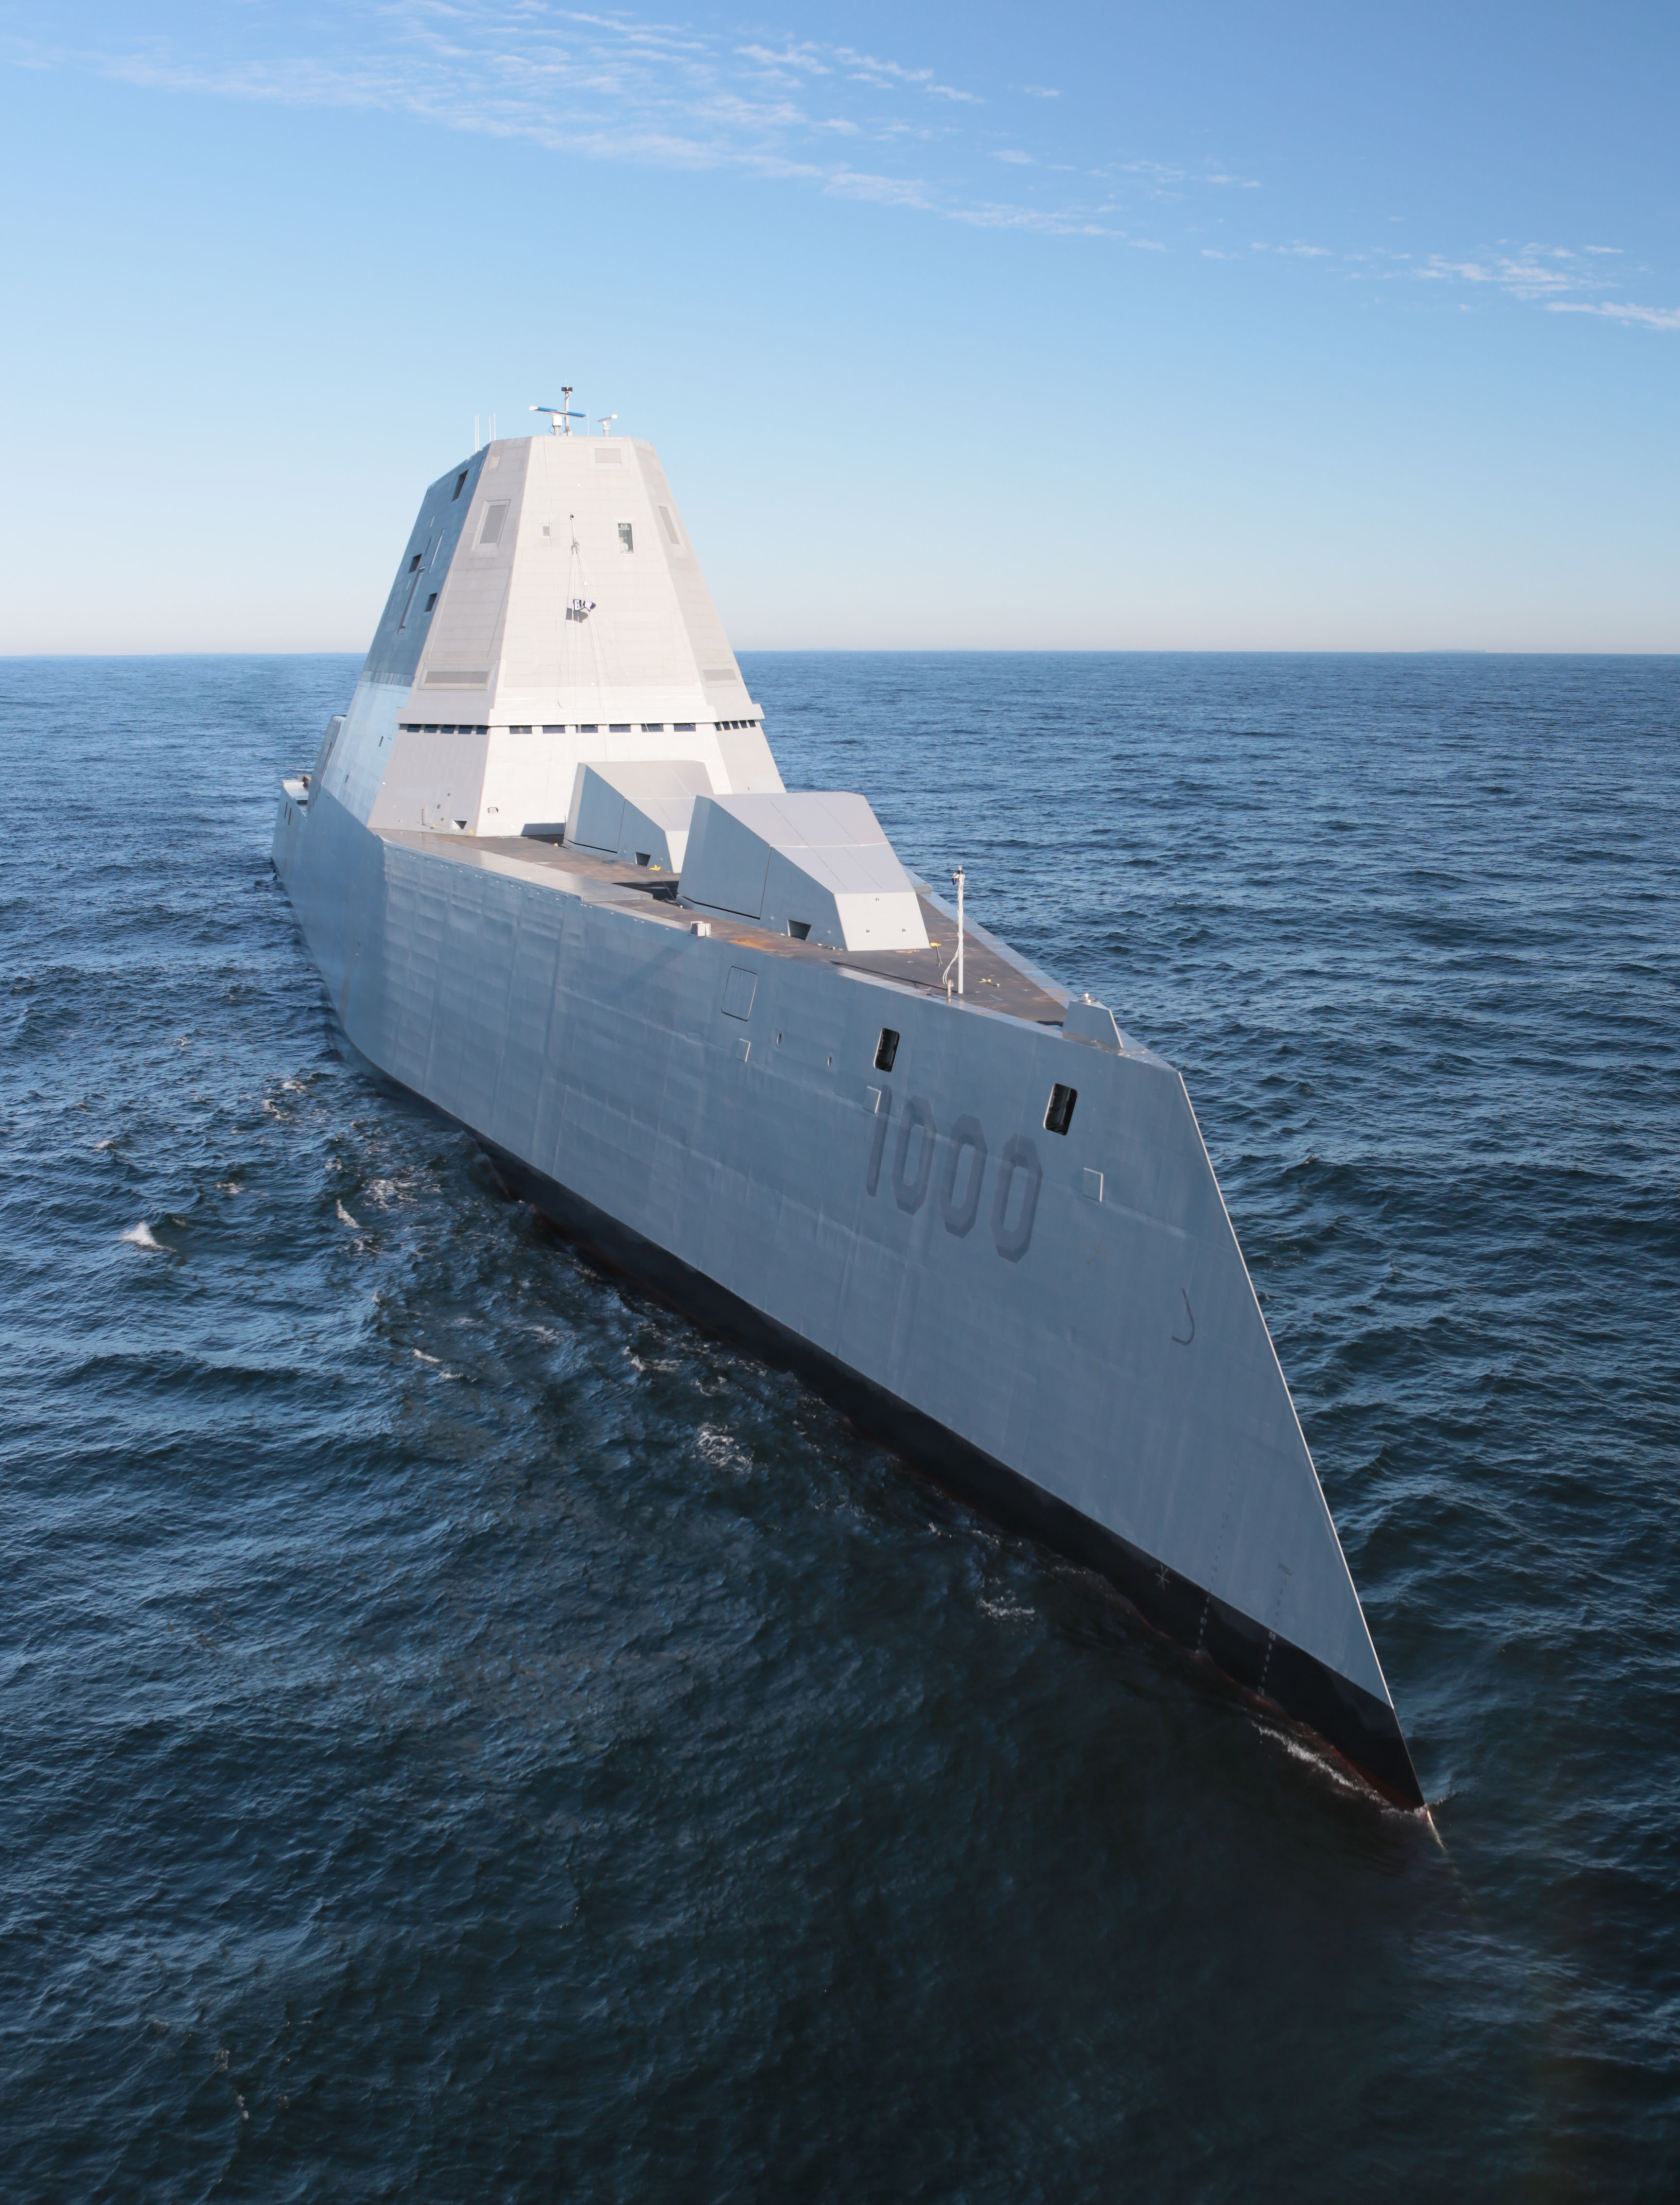 Massive stealth destroyer Zumwalt joins the Navy